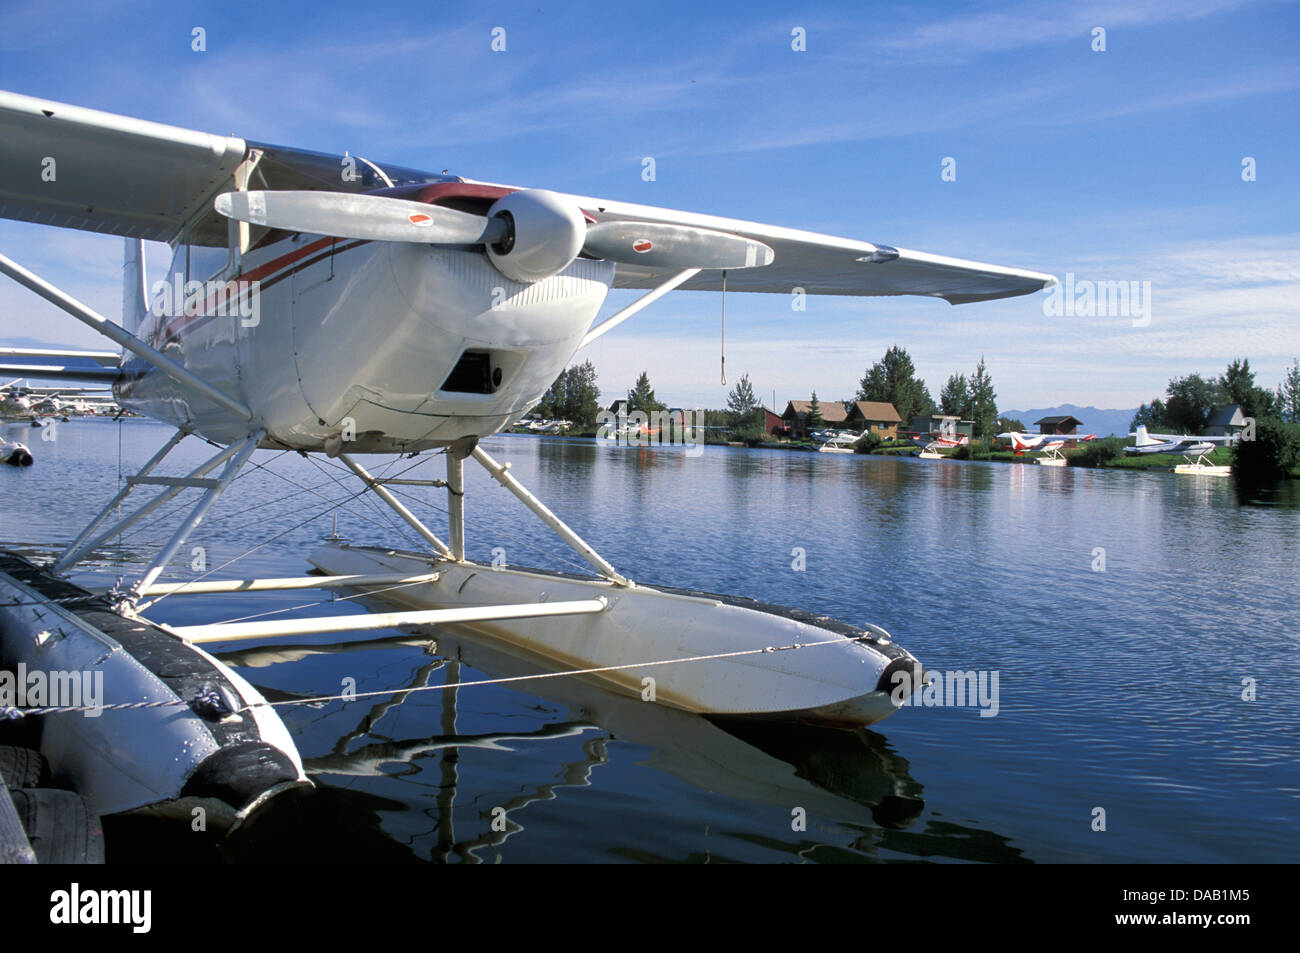 Lake Hood, Wasserflugzeug, Hub, Anchorage, Alaska, USA, Flugzeug, Wasser, Sonnenschein, Bucht, Fliege, Antenne, Wasserflugzeug, Stütze, propeller Stockfoto